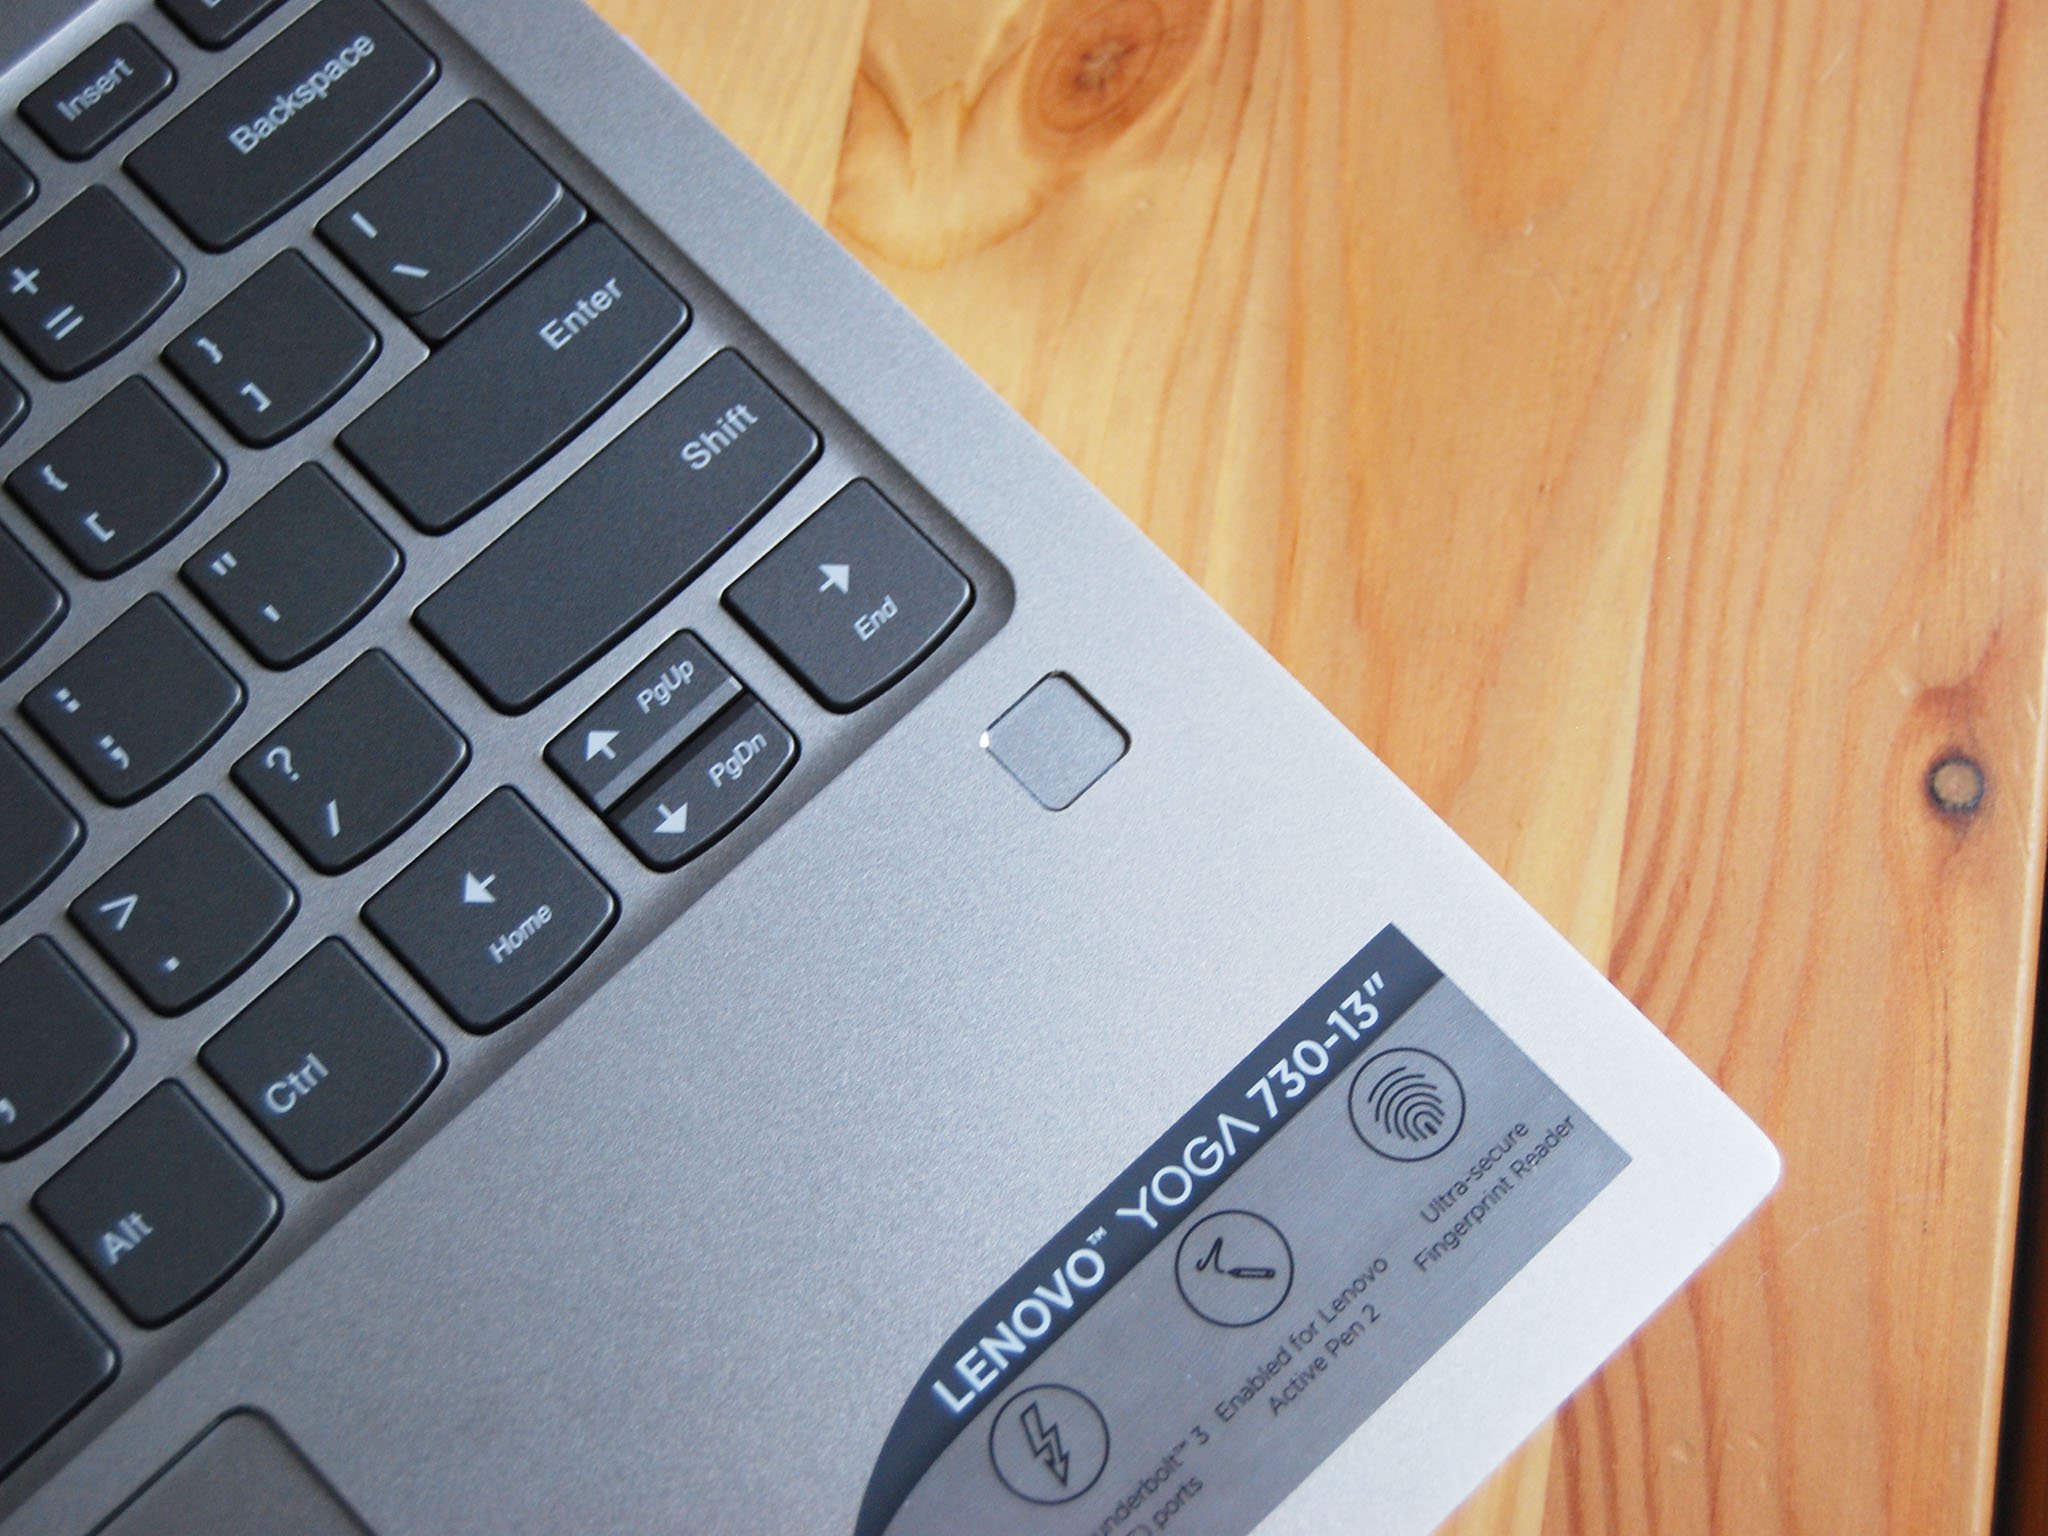 Lenovo Yoga 730 13 review